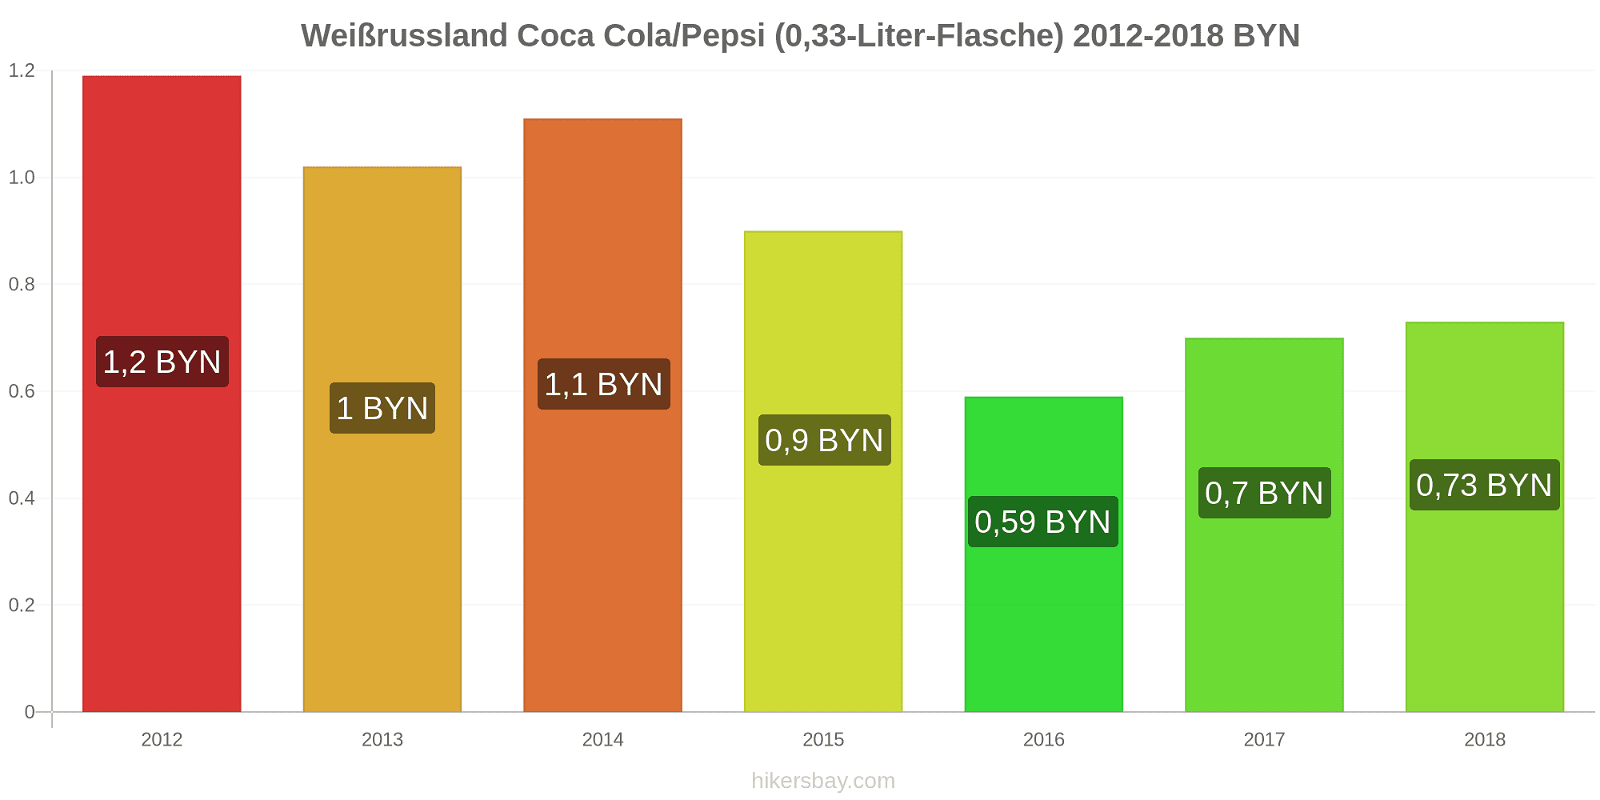 Weißrussland Preisänderungen Coke/Pepsi (0,33-Liter-Flasche) hikersbay.com